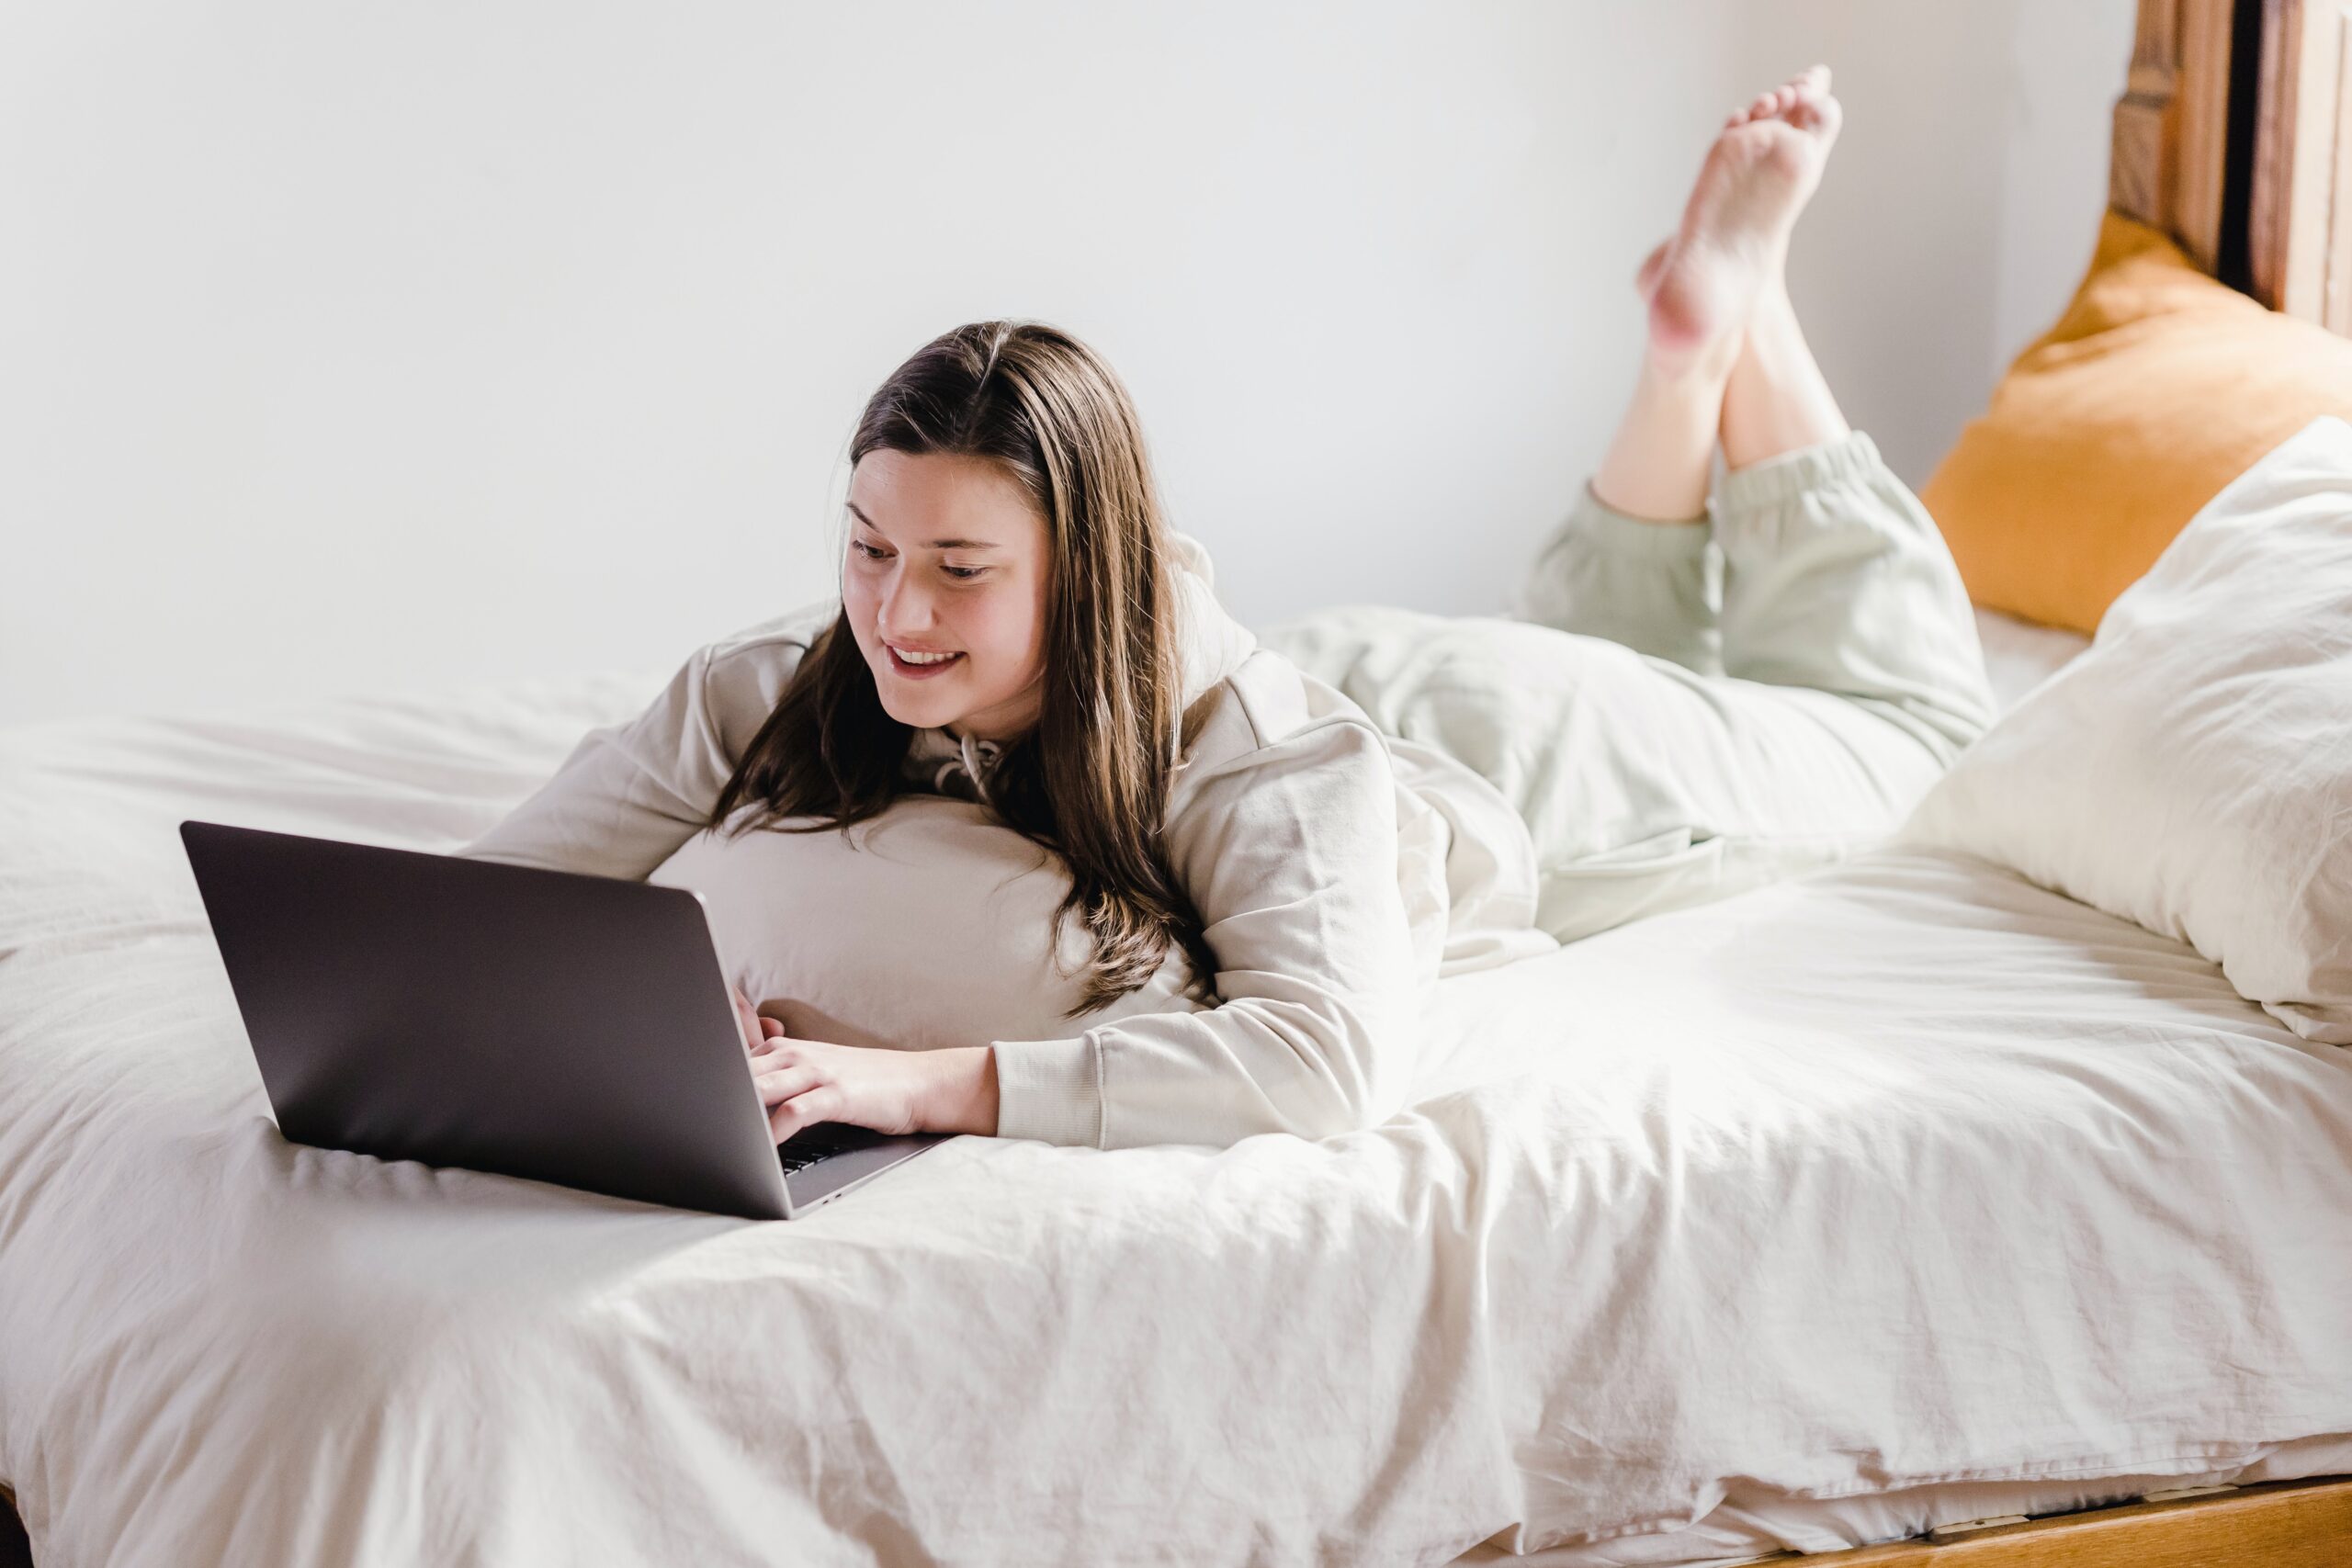 Eine junge Frau liegt im Trainingsanzug auf dem Bett und schaut auf einen Laptop